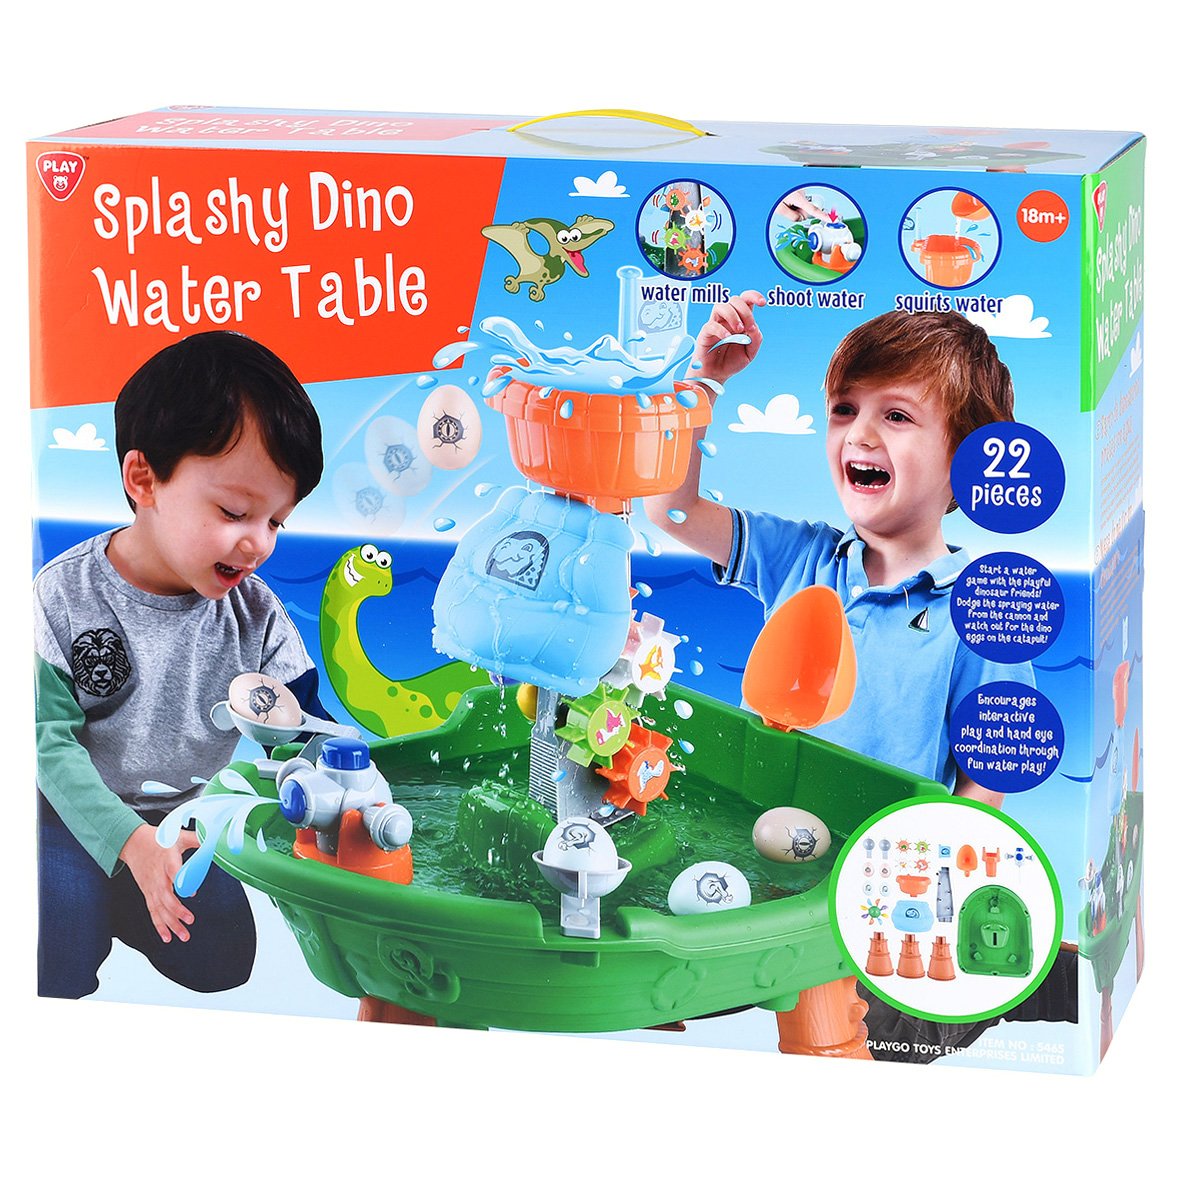 Vandens žaidimų stalas PLAYGO Splashy Dino - 2